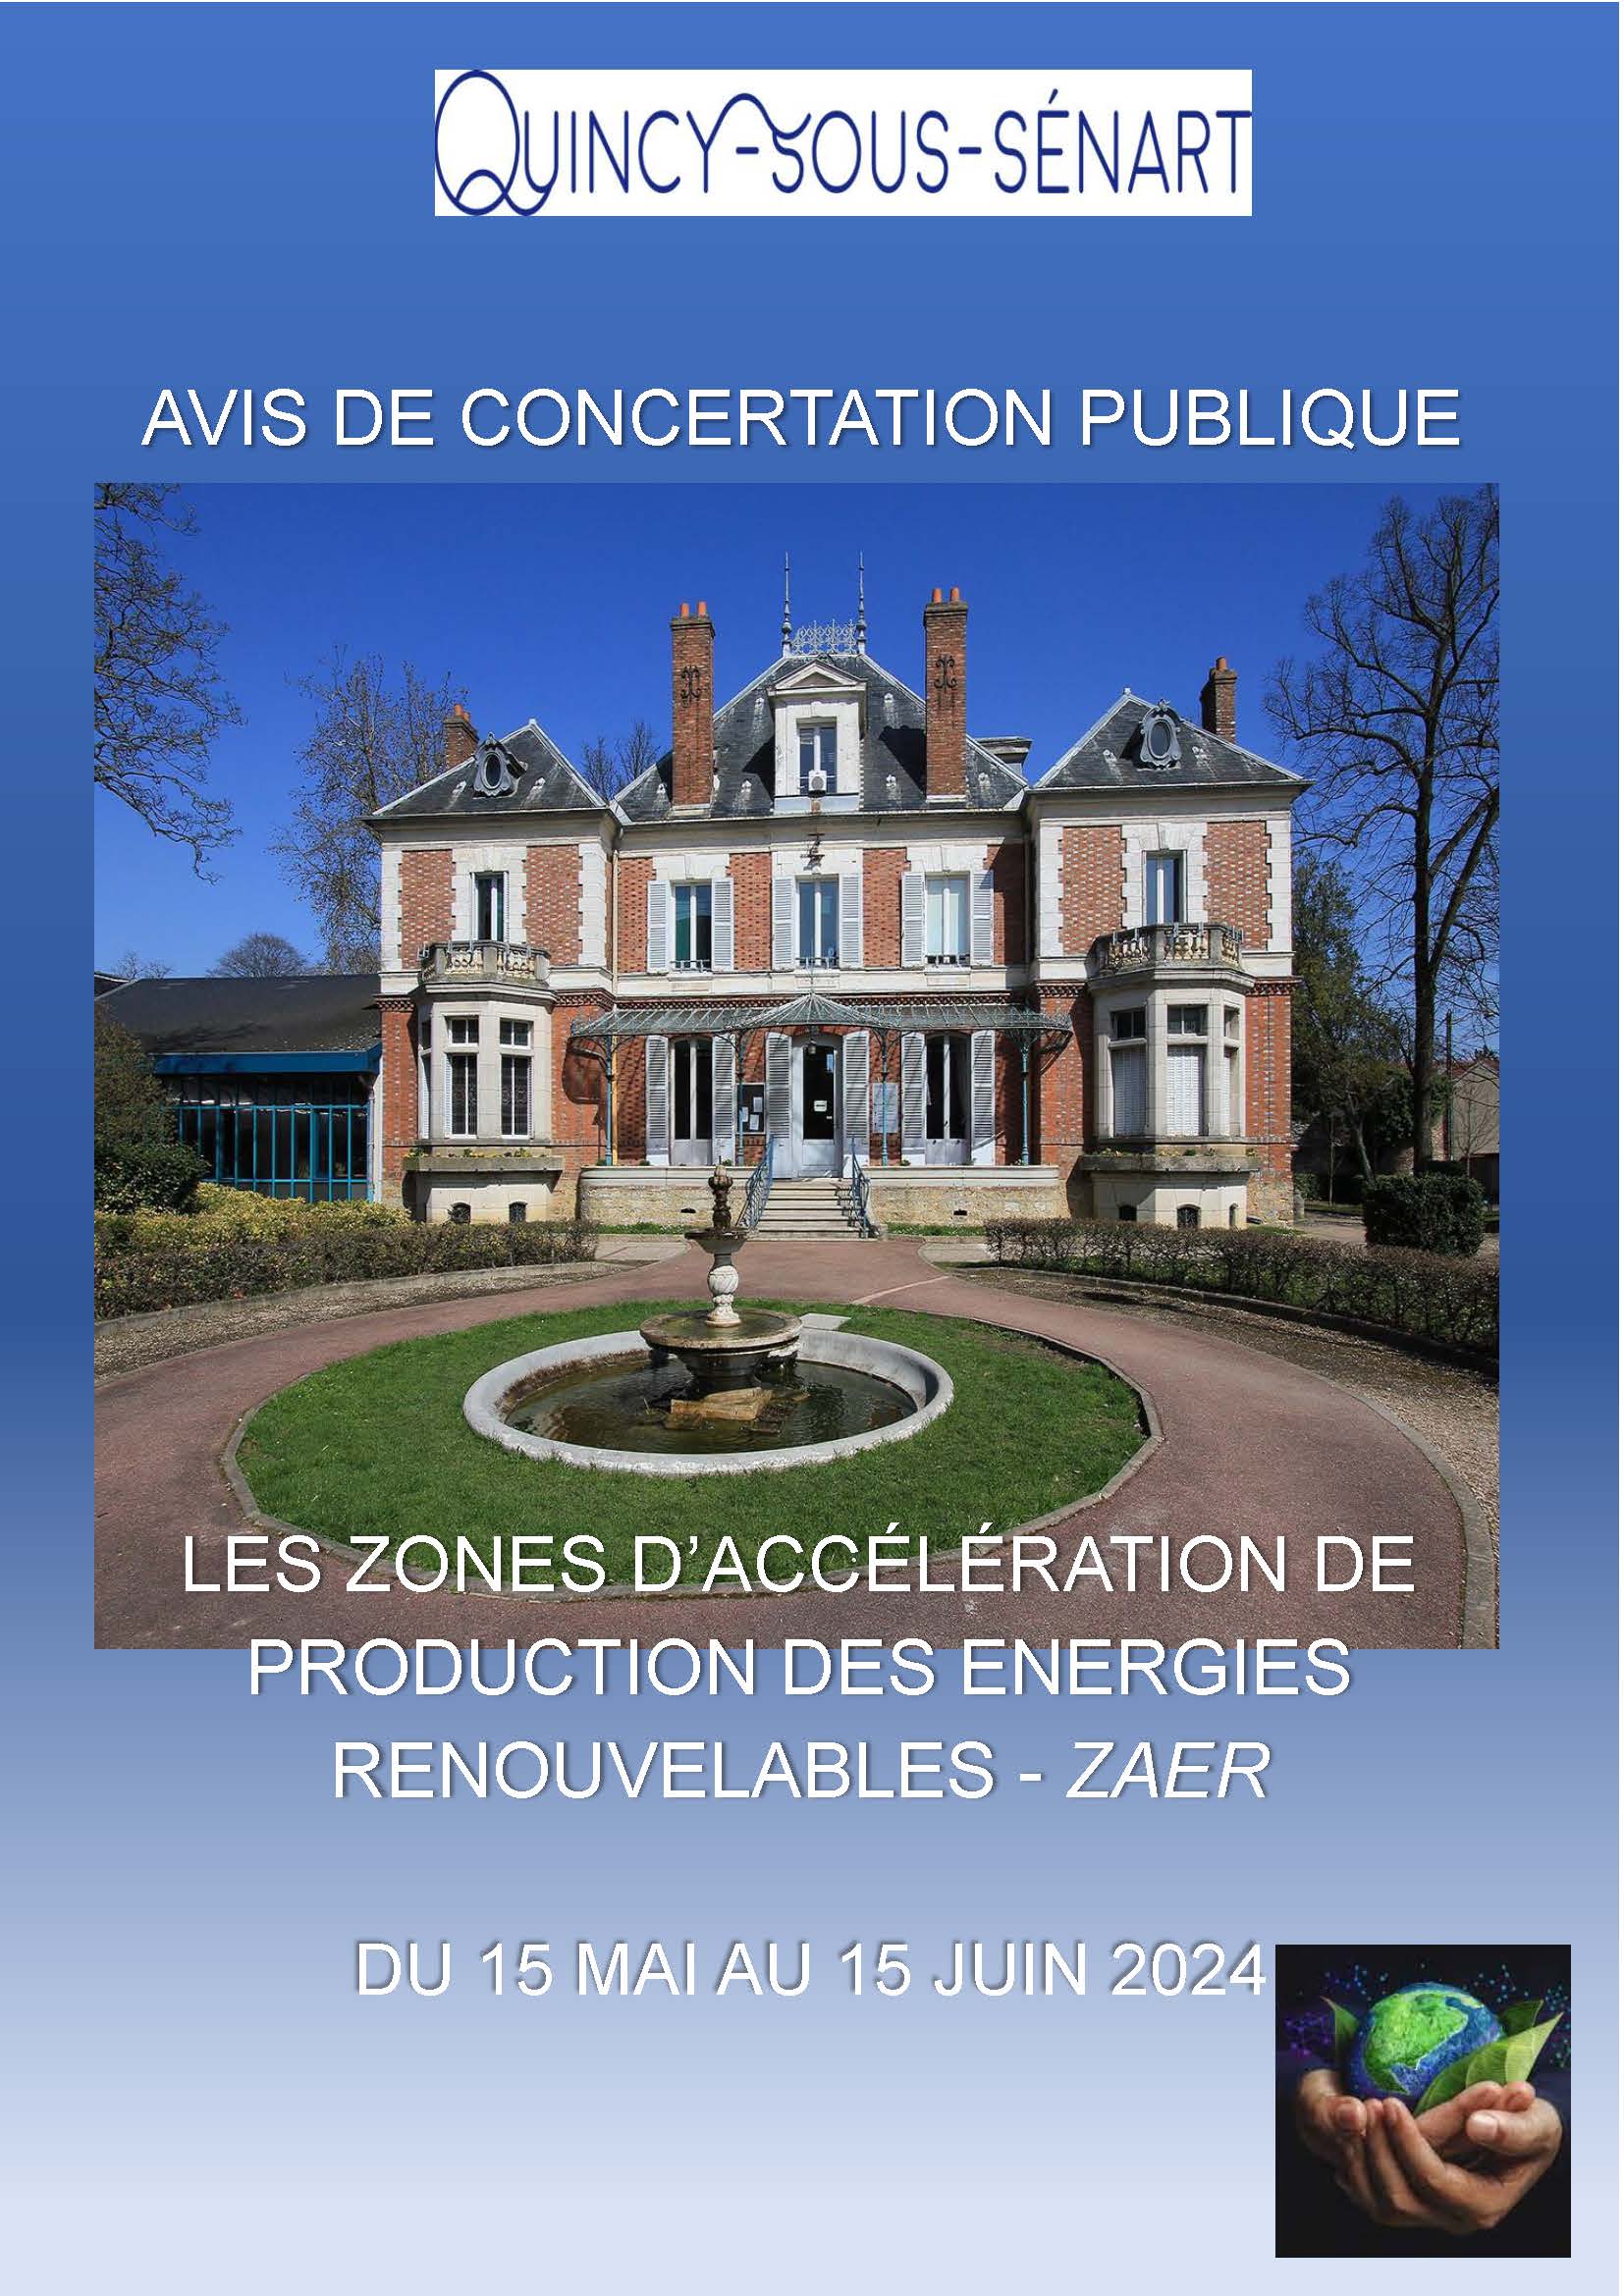 AVIS DE CONCERTATION DU PUBLIC ZAER A CONSULTER SUR PLACE_Page_1.jpg